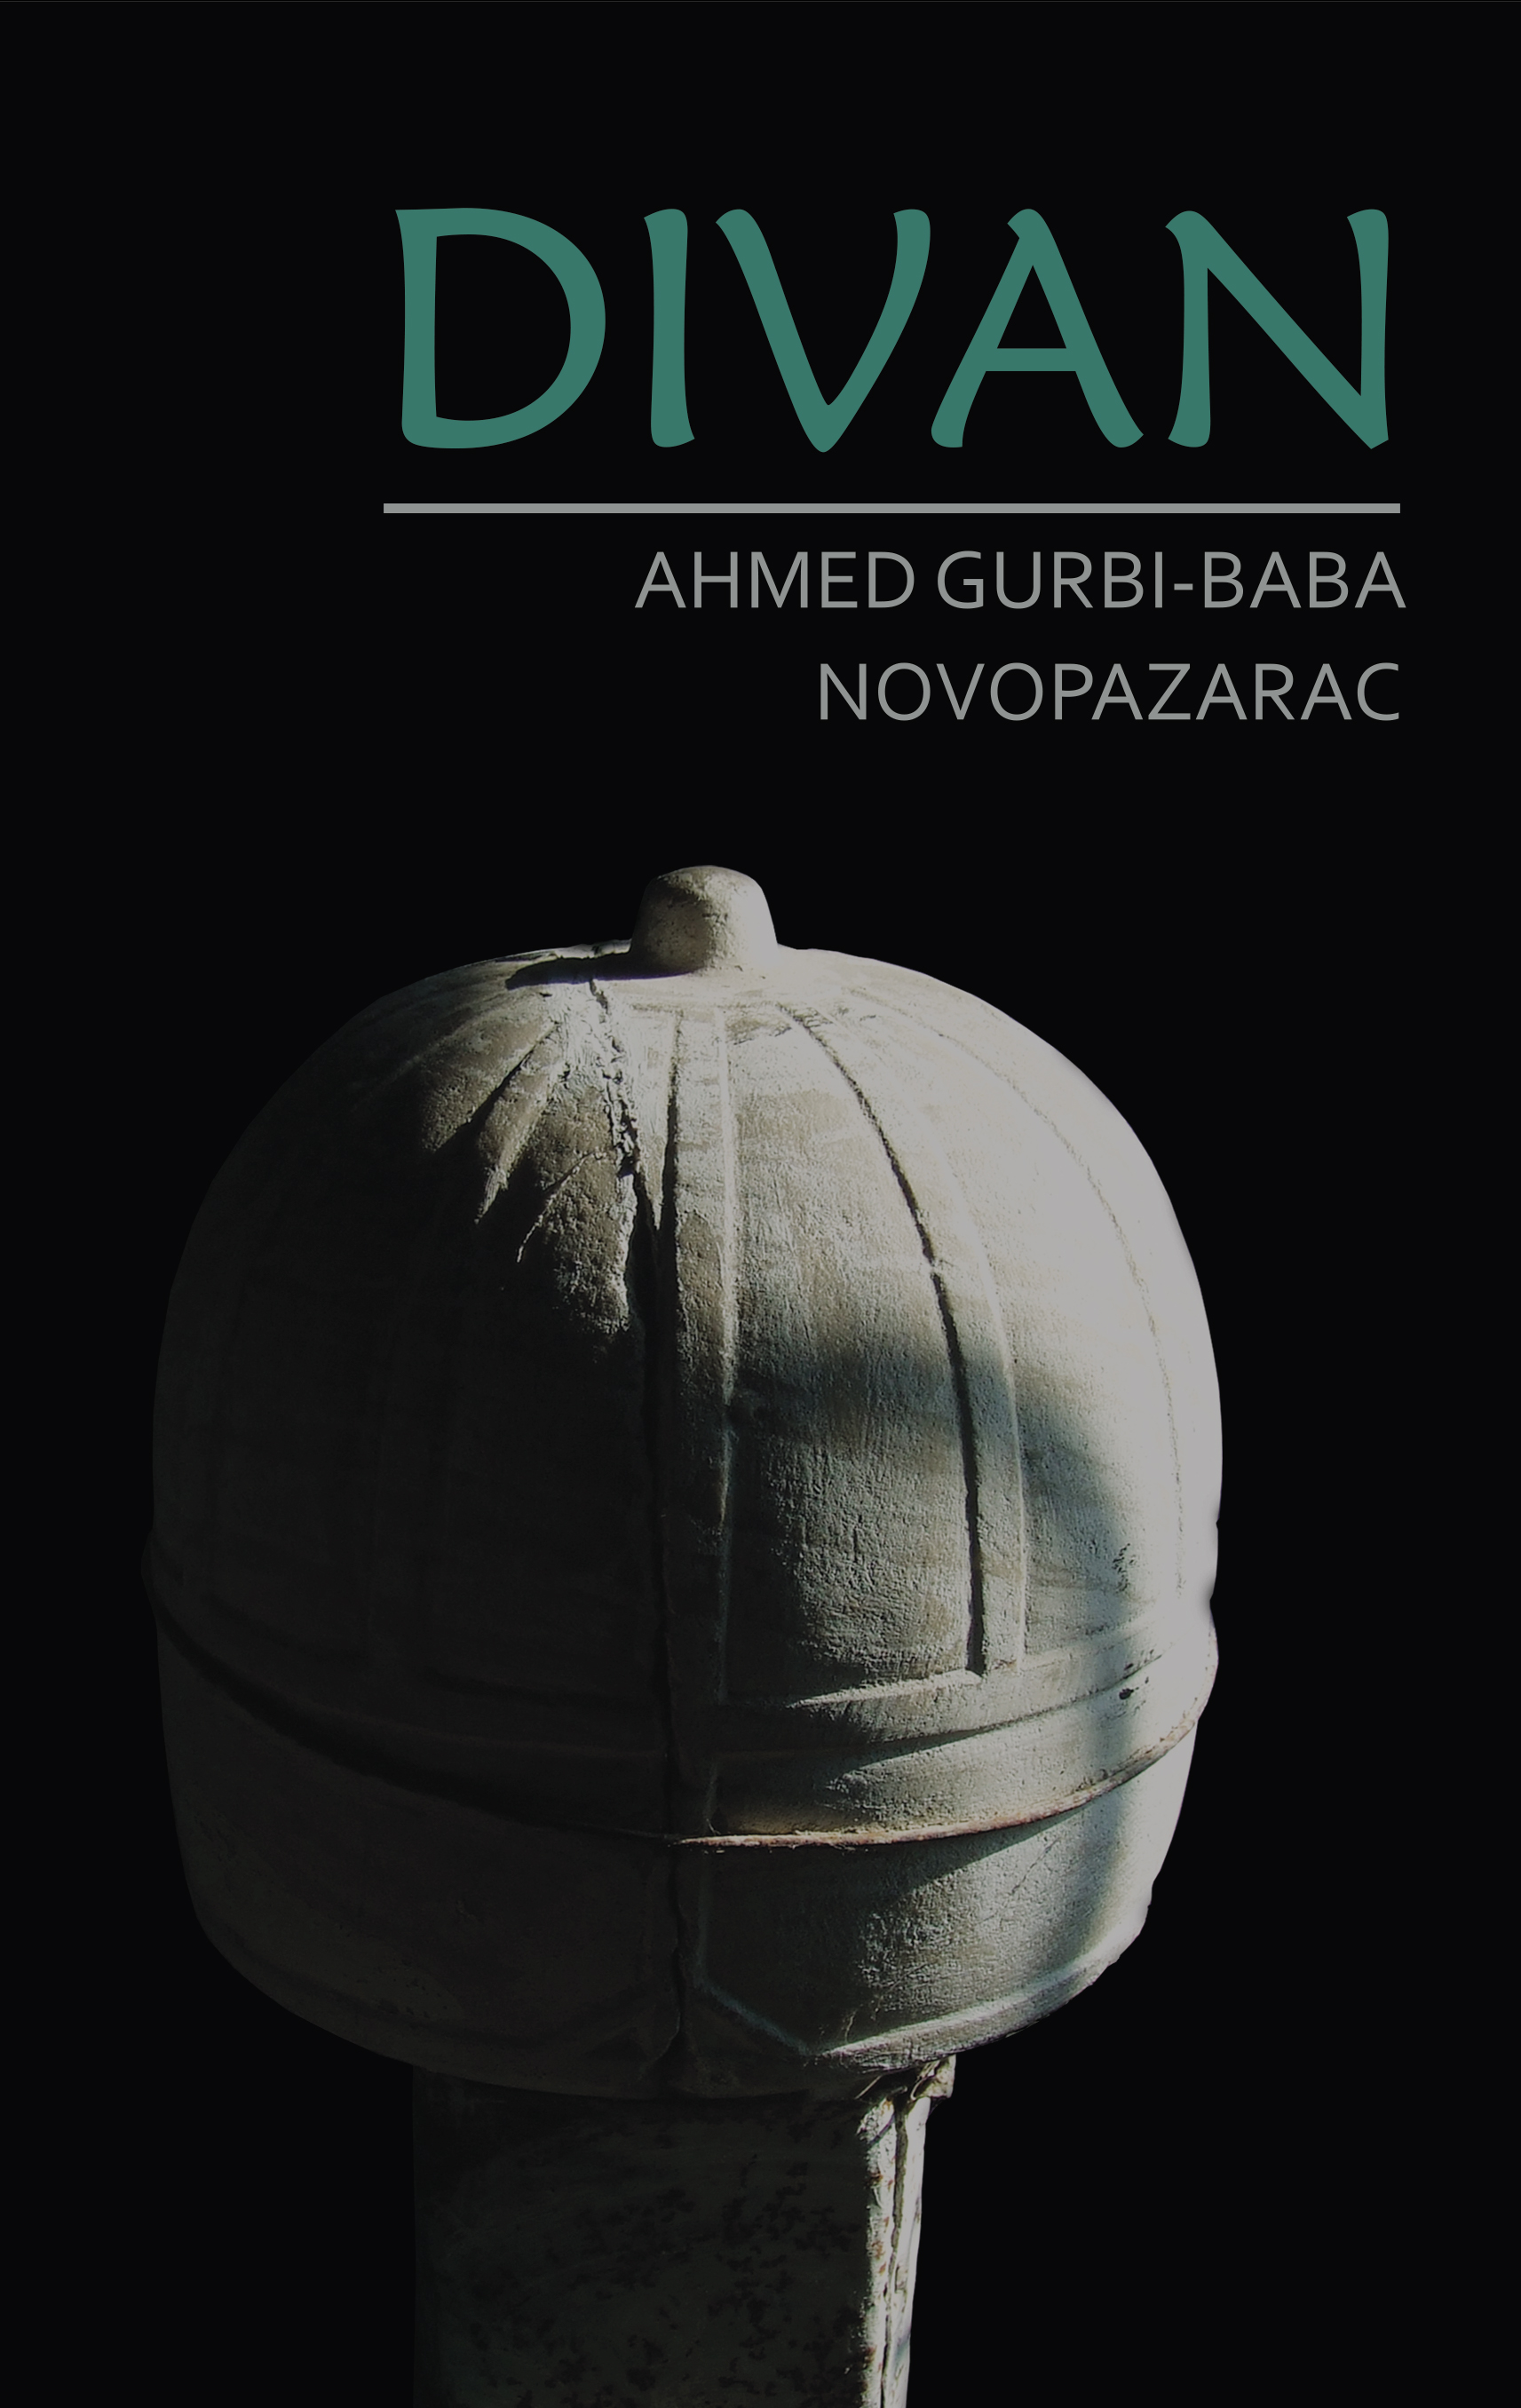 Divan Ahmed Gurbi-baba Novopazarac